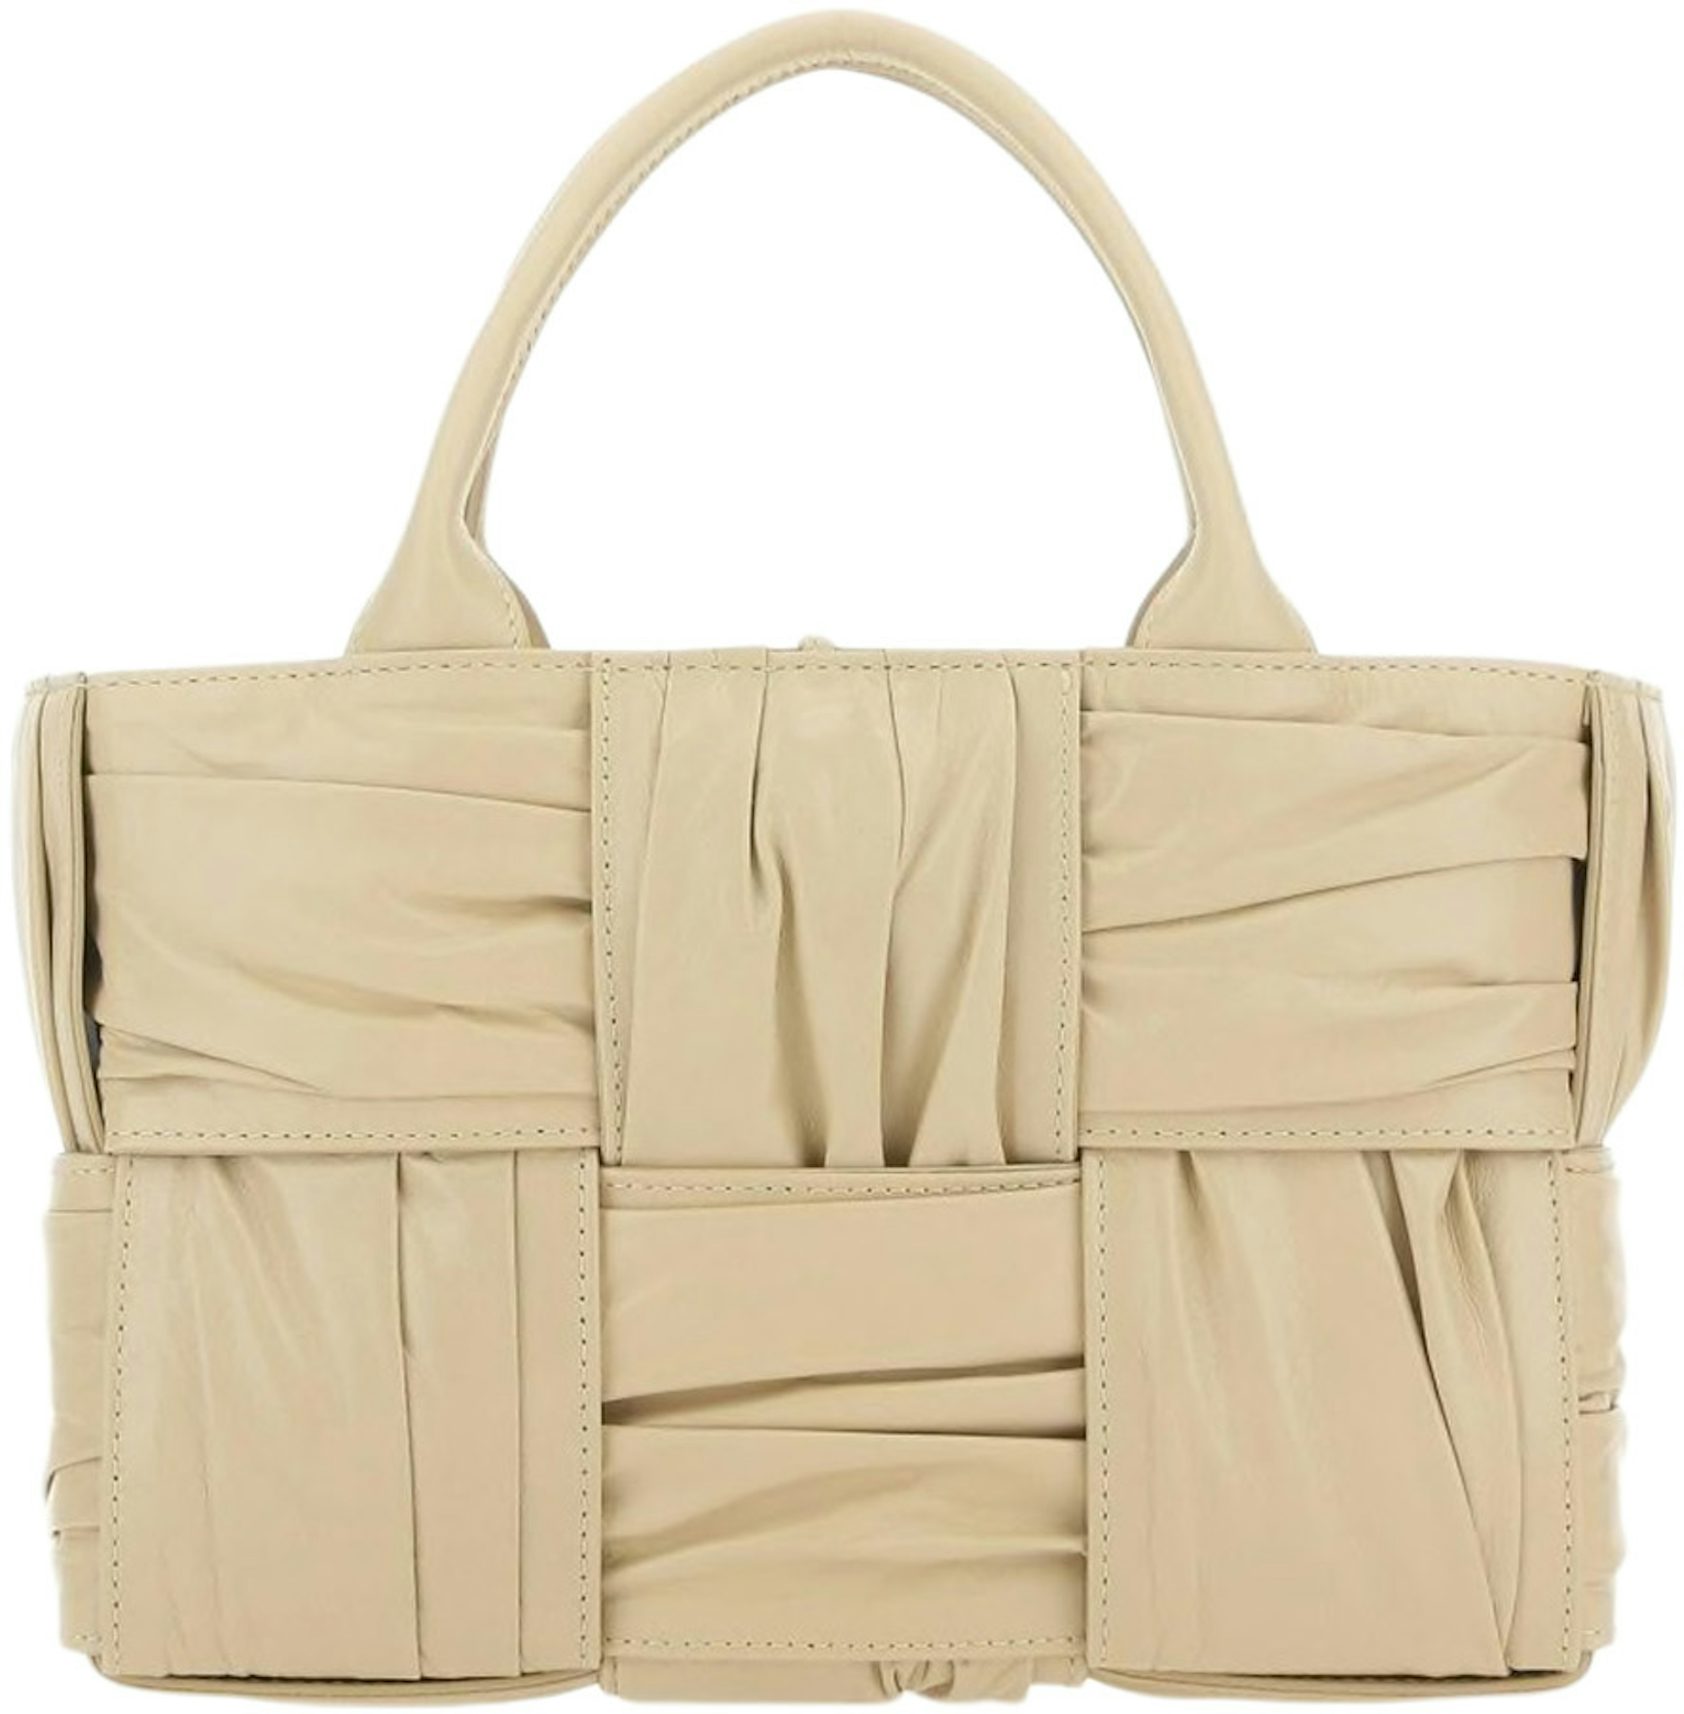 The Foulard Intrecciato Leather Shoulder Bag